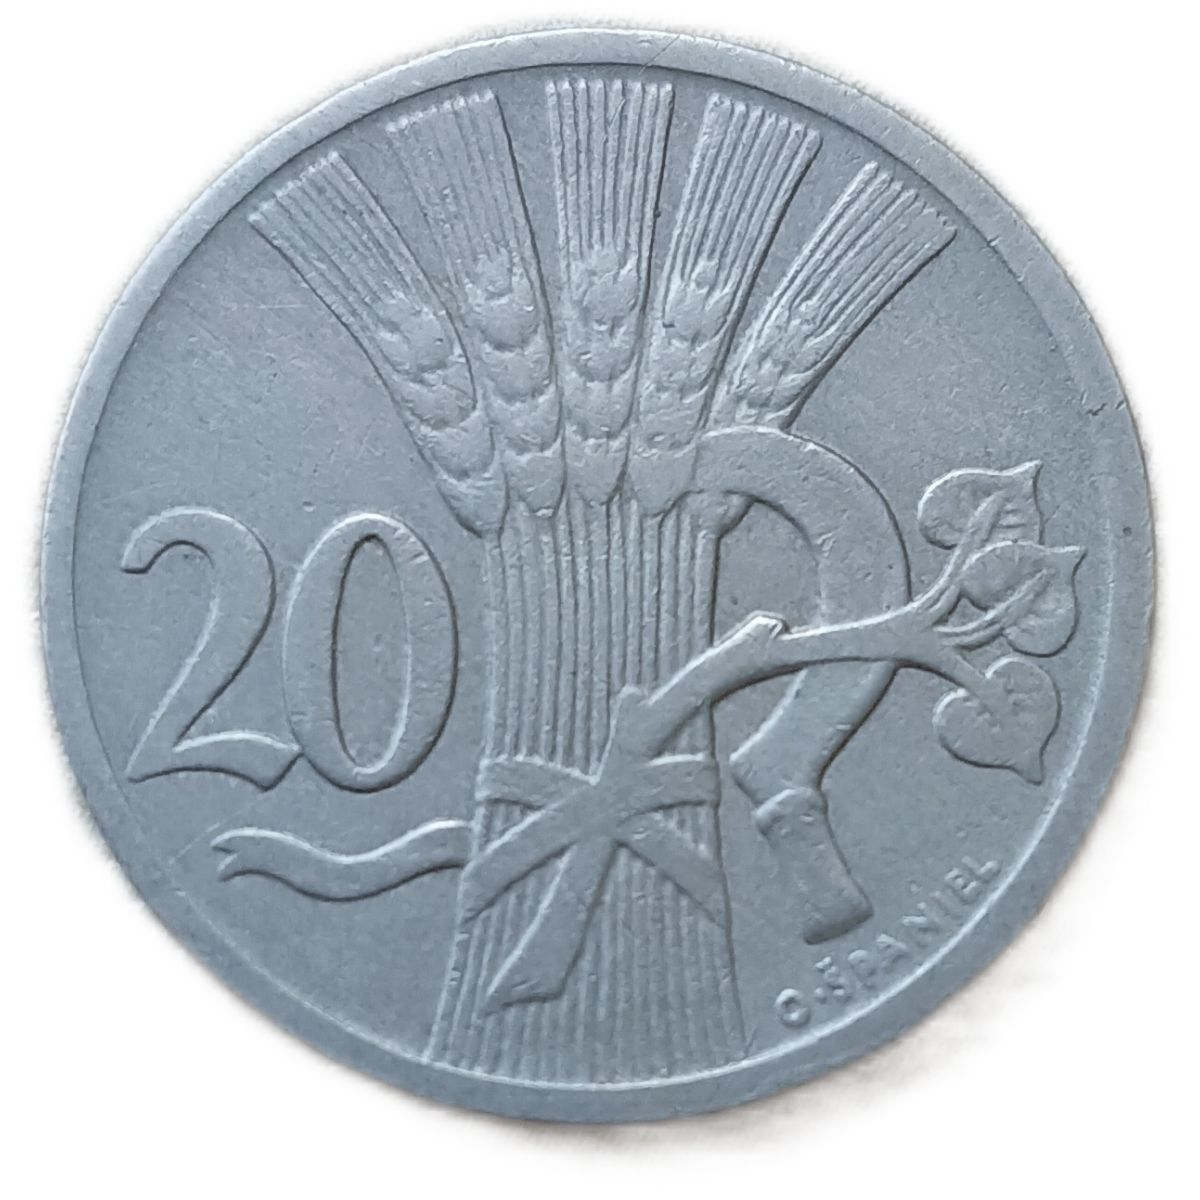 Чехословакия 20. Монеты Чехословакии 20. Монета с оливковой ветвью старинная и профилем. Исида кллос серп.